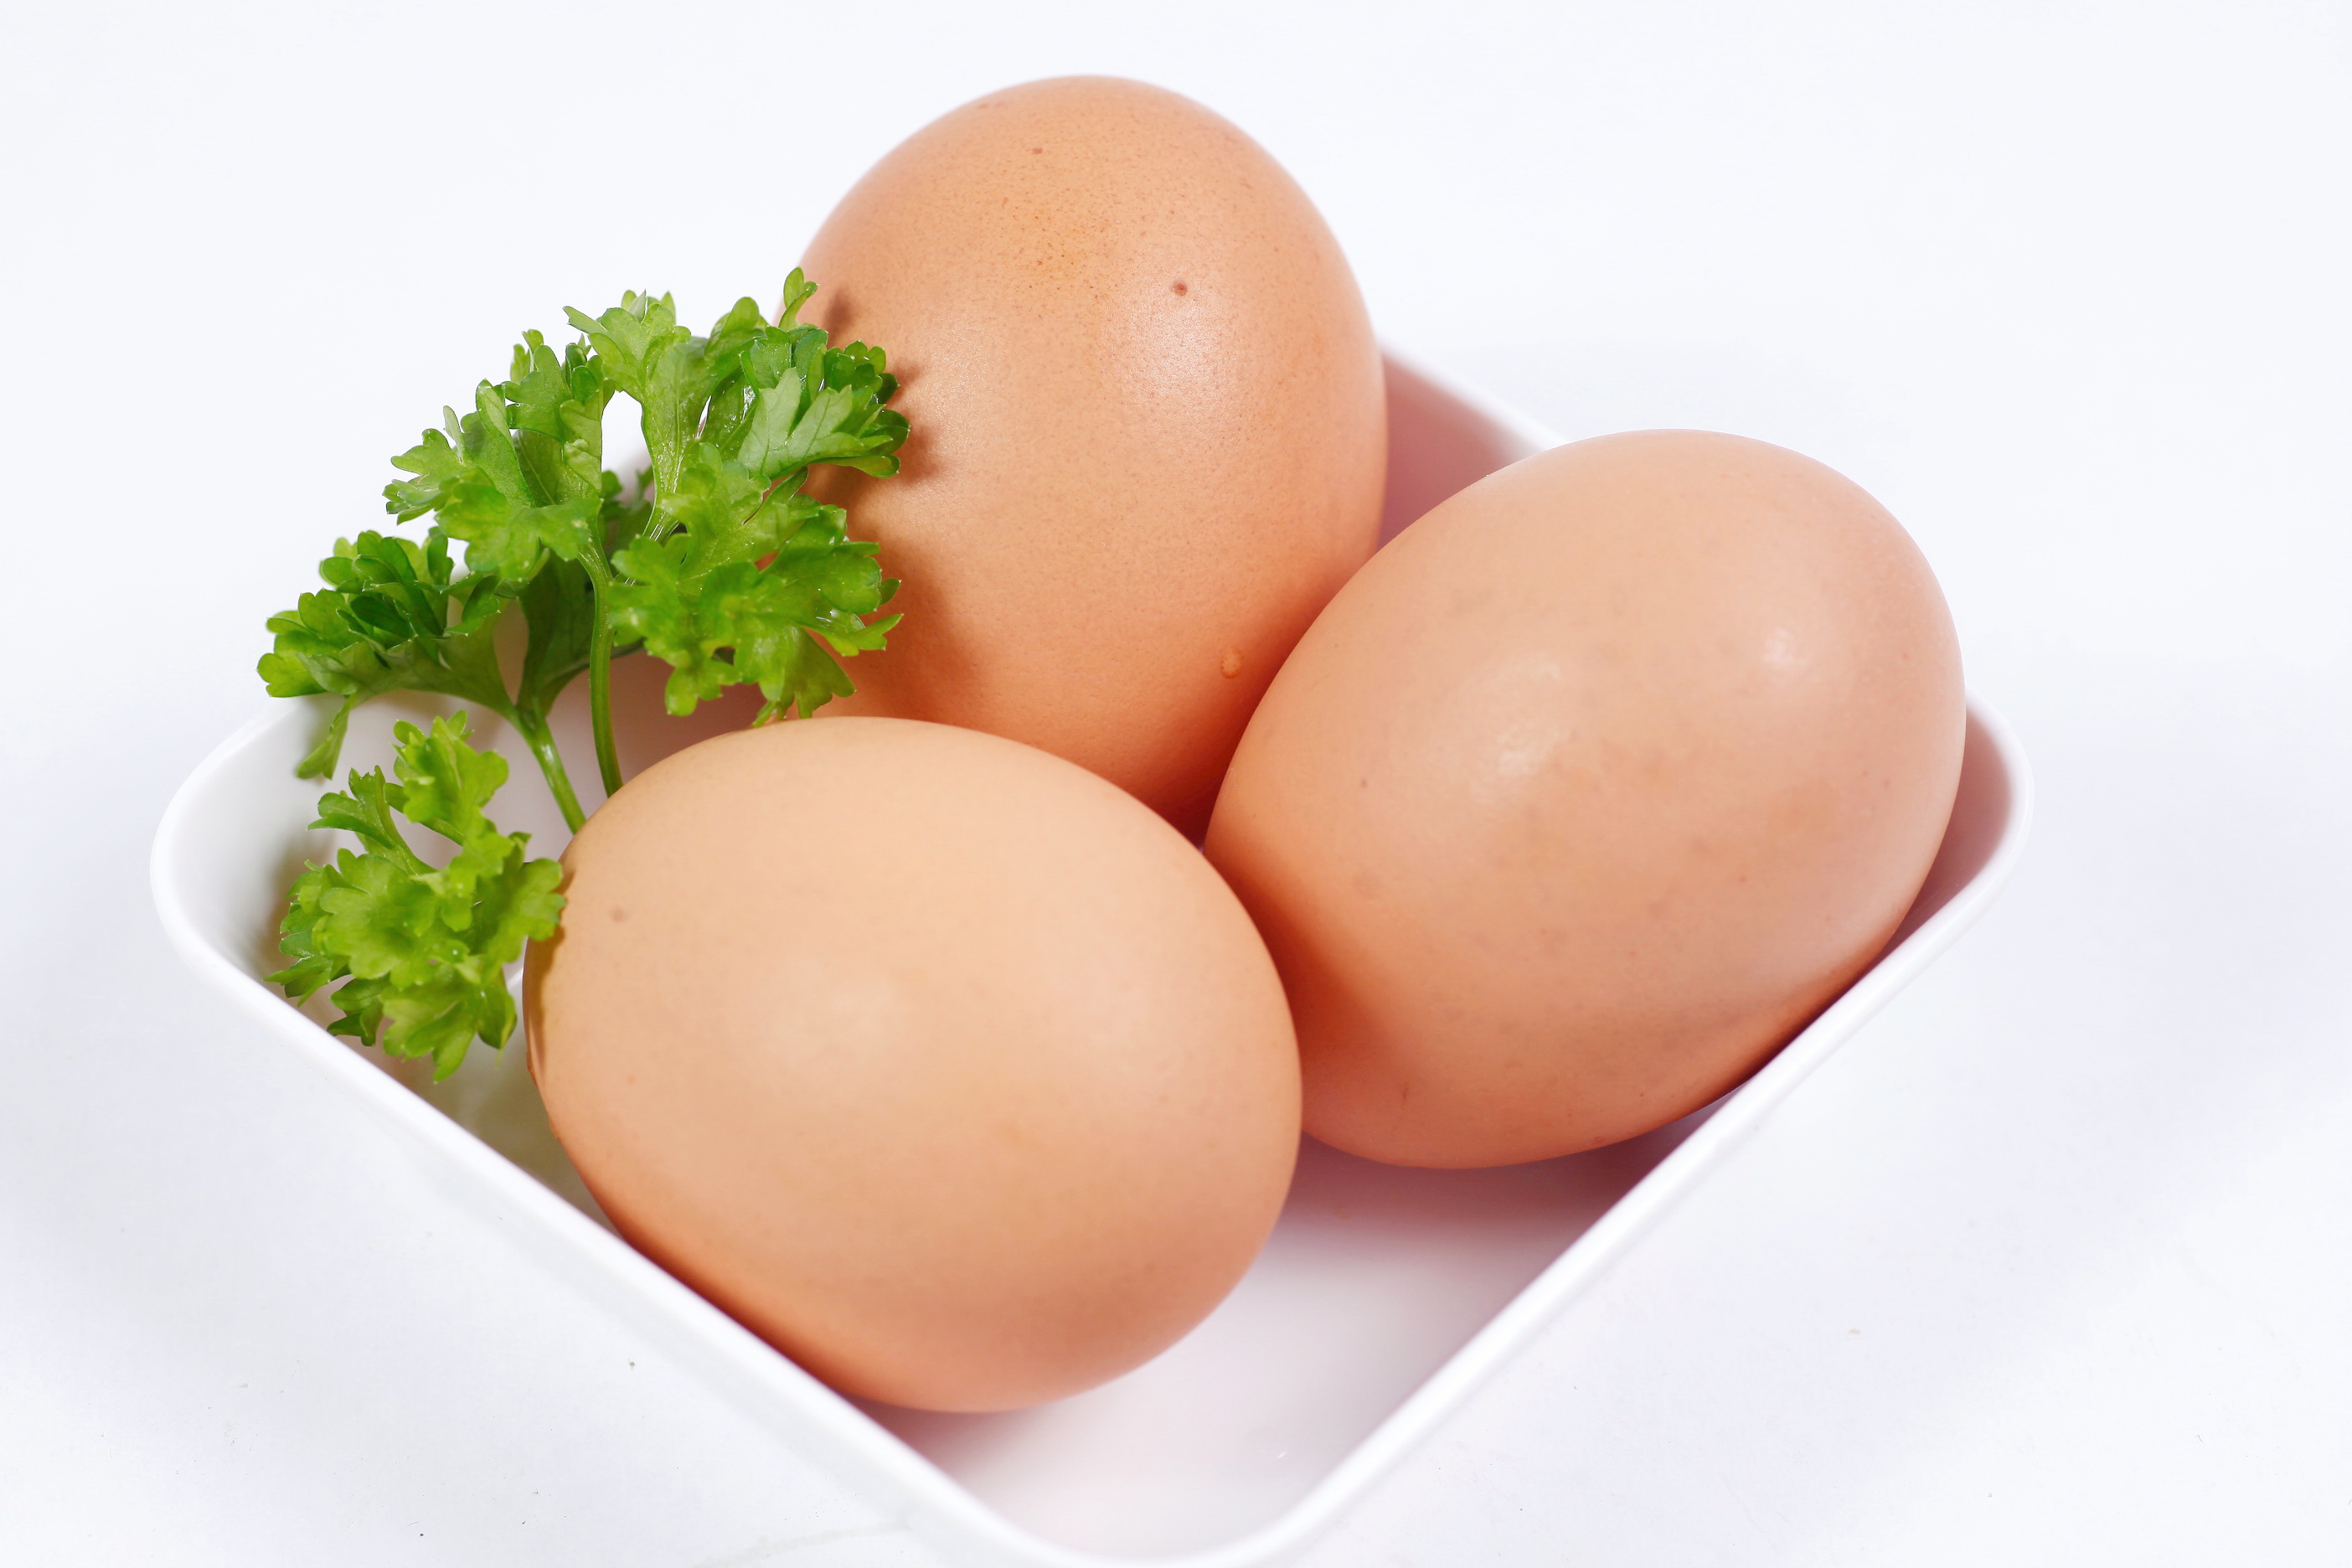   Bị tiểu đường có ăn trứng được không, nếu có thì ăn bao nhiêu là tốt nhất?  